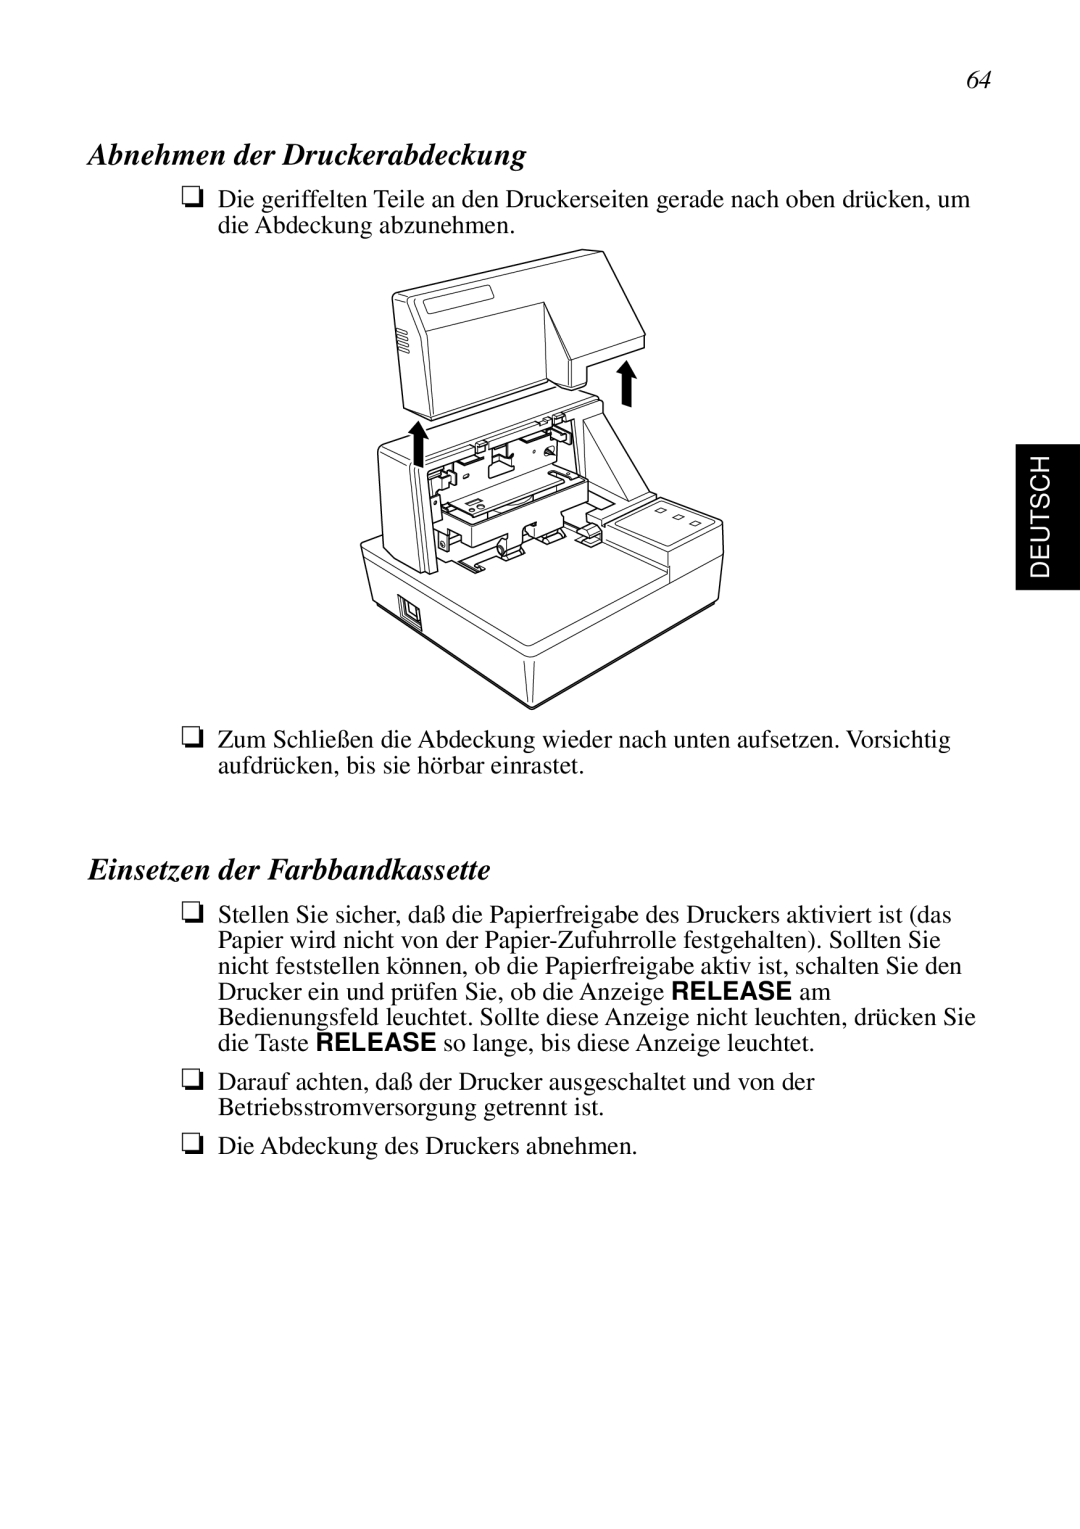 Star Micronics SP298 user manual Abnehmen der Druckerabdeckung, Einsetzen der Farbbandkassette, Deutsch 